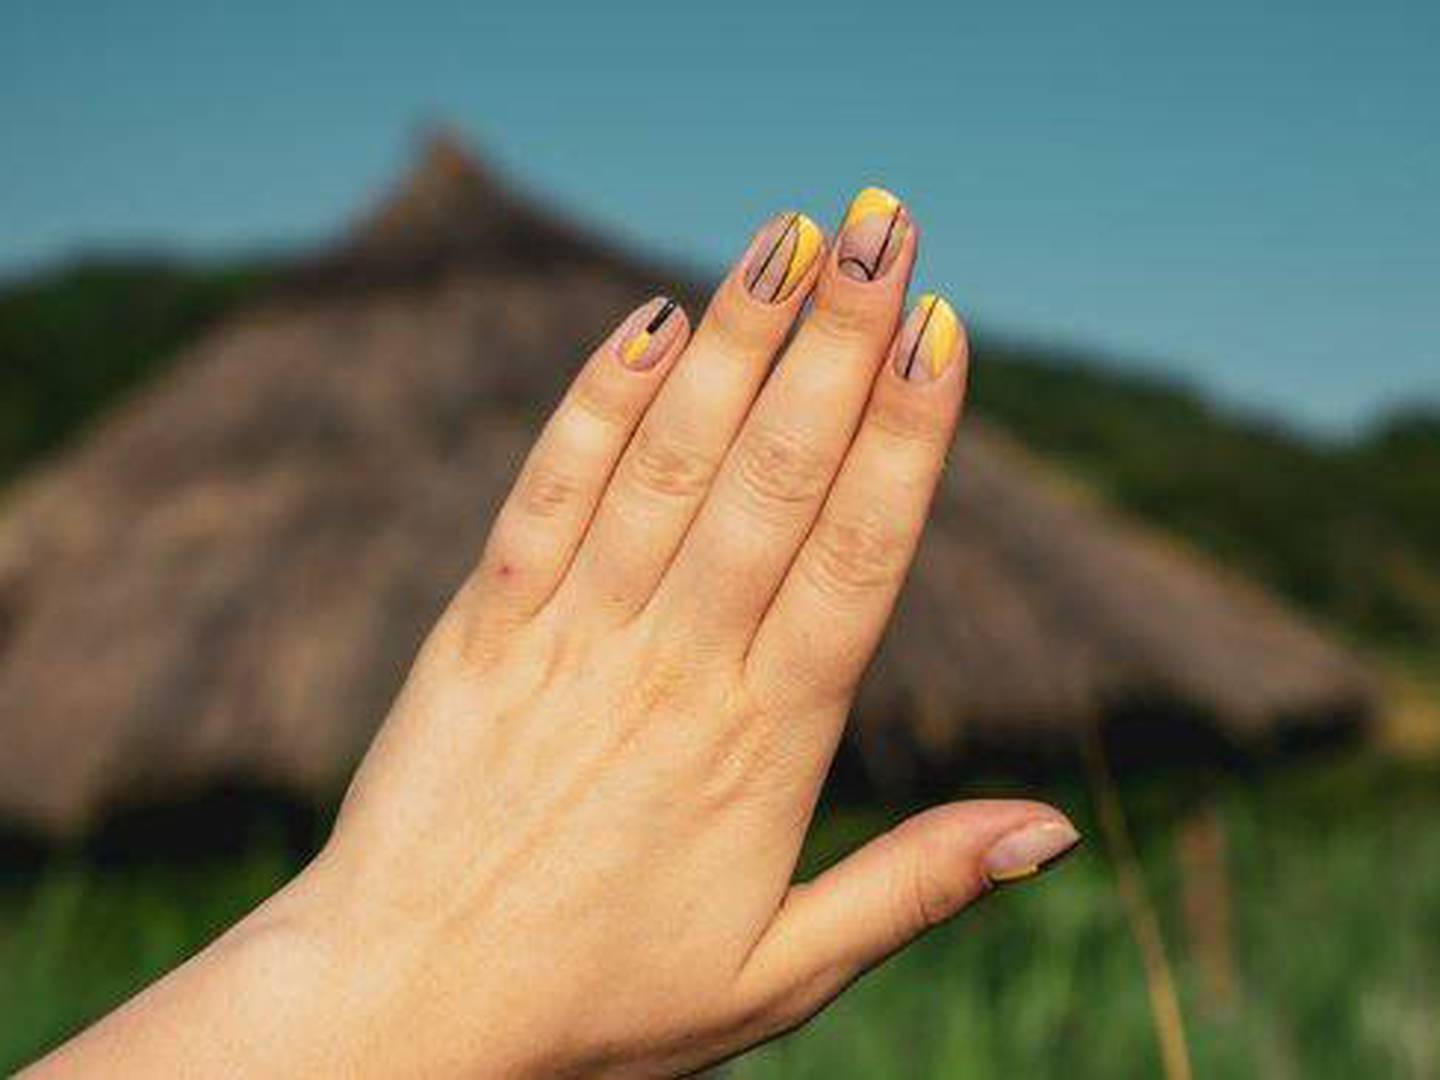 Uñas amarillas 2020: mira estas uñas acrílicas decoradas